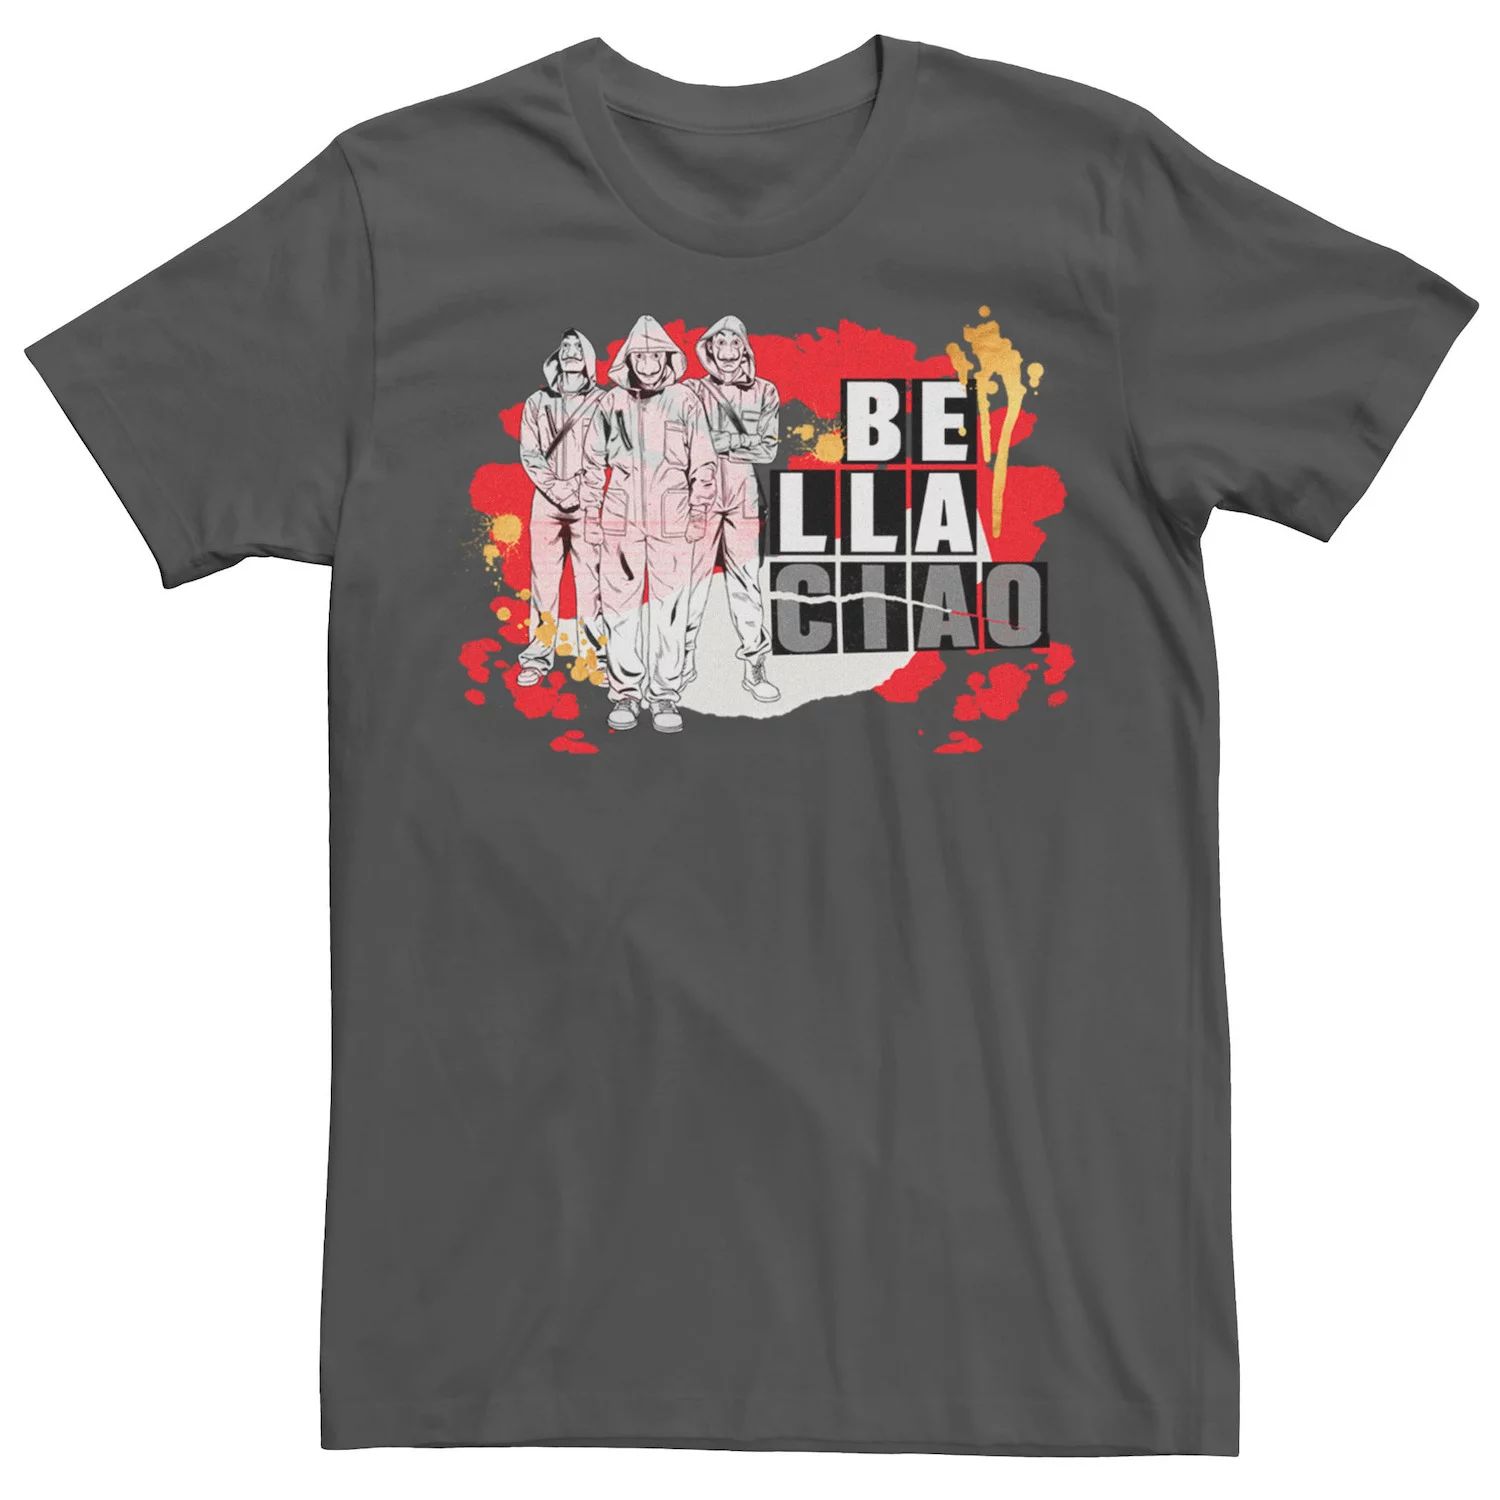 Мужская футболка Netflix La Casa De Papel Bella Ciao с брызгами краски Licensed Character мужская футболка с коротким рукавом la casa de papel bella ciao masked trio fifth sun черный